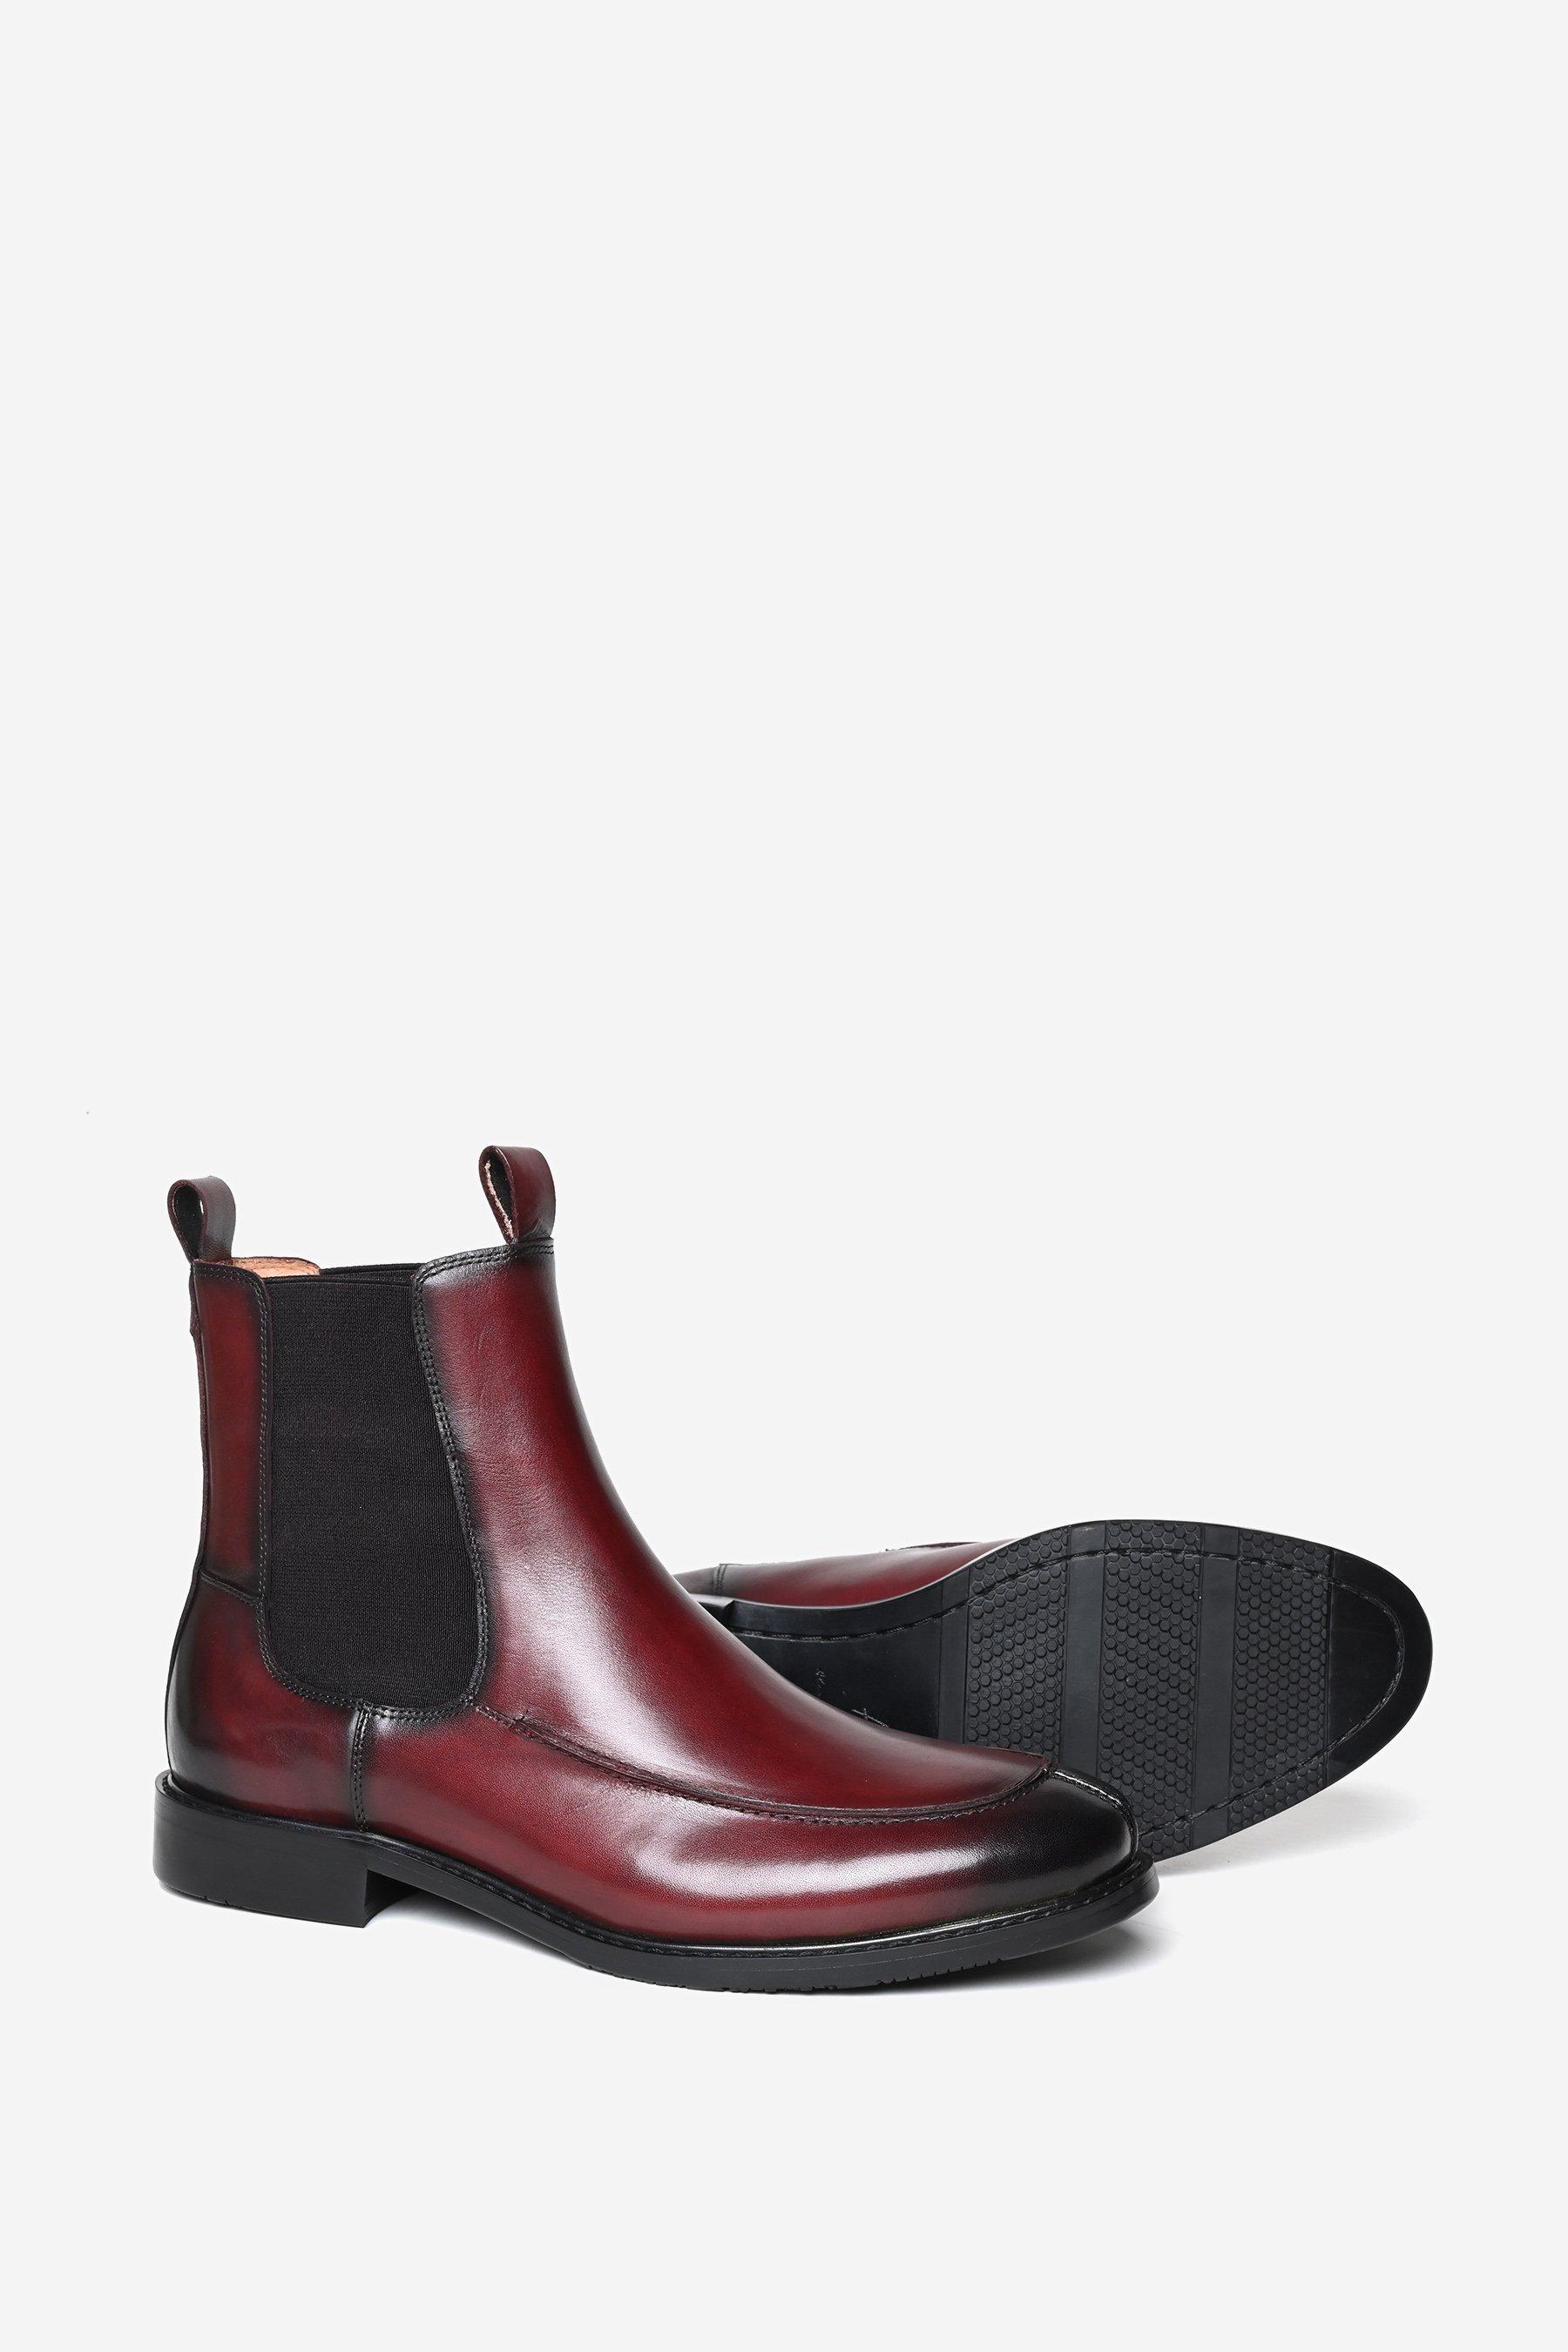 Кожаные ботинки челси премиум-класса Finsbury Alexander Pace, коричневый